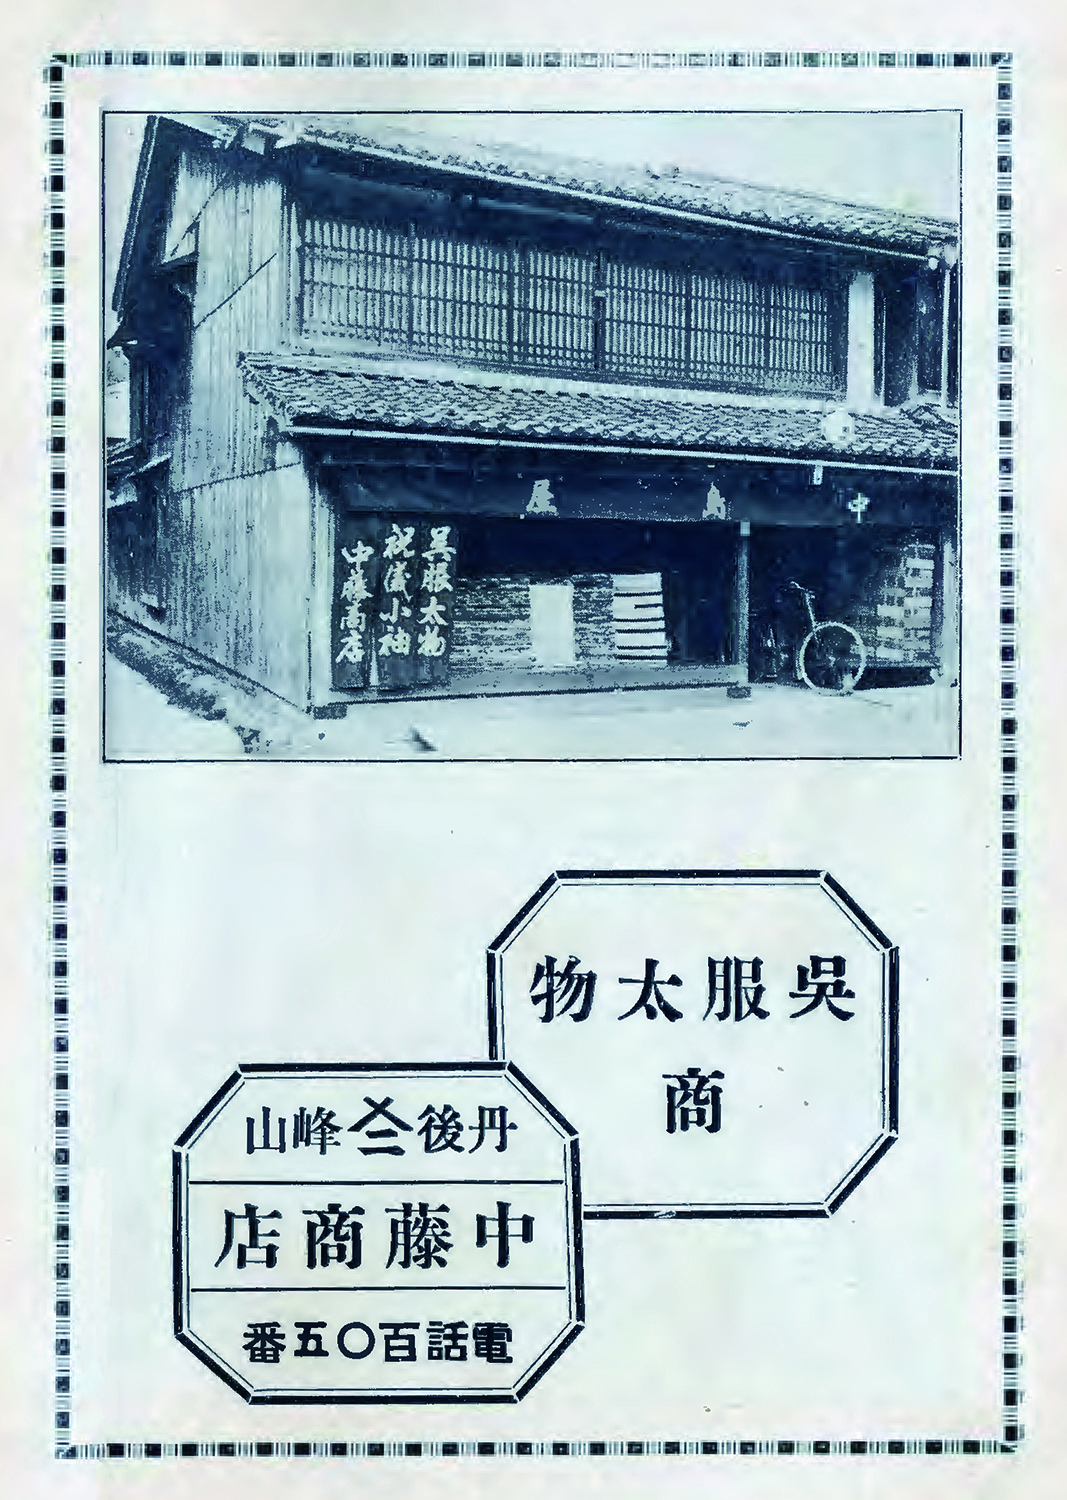 中藤商店 中島屋's image 1